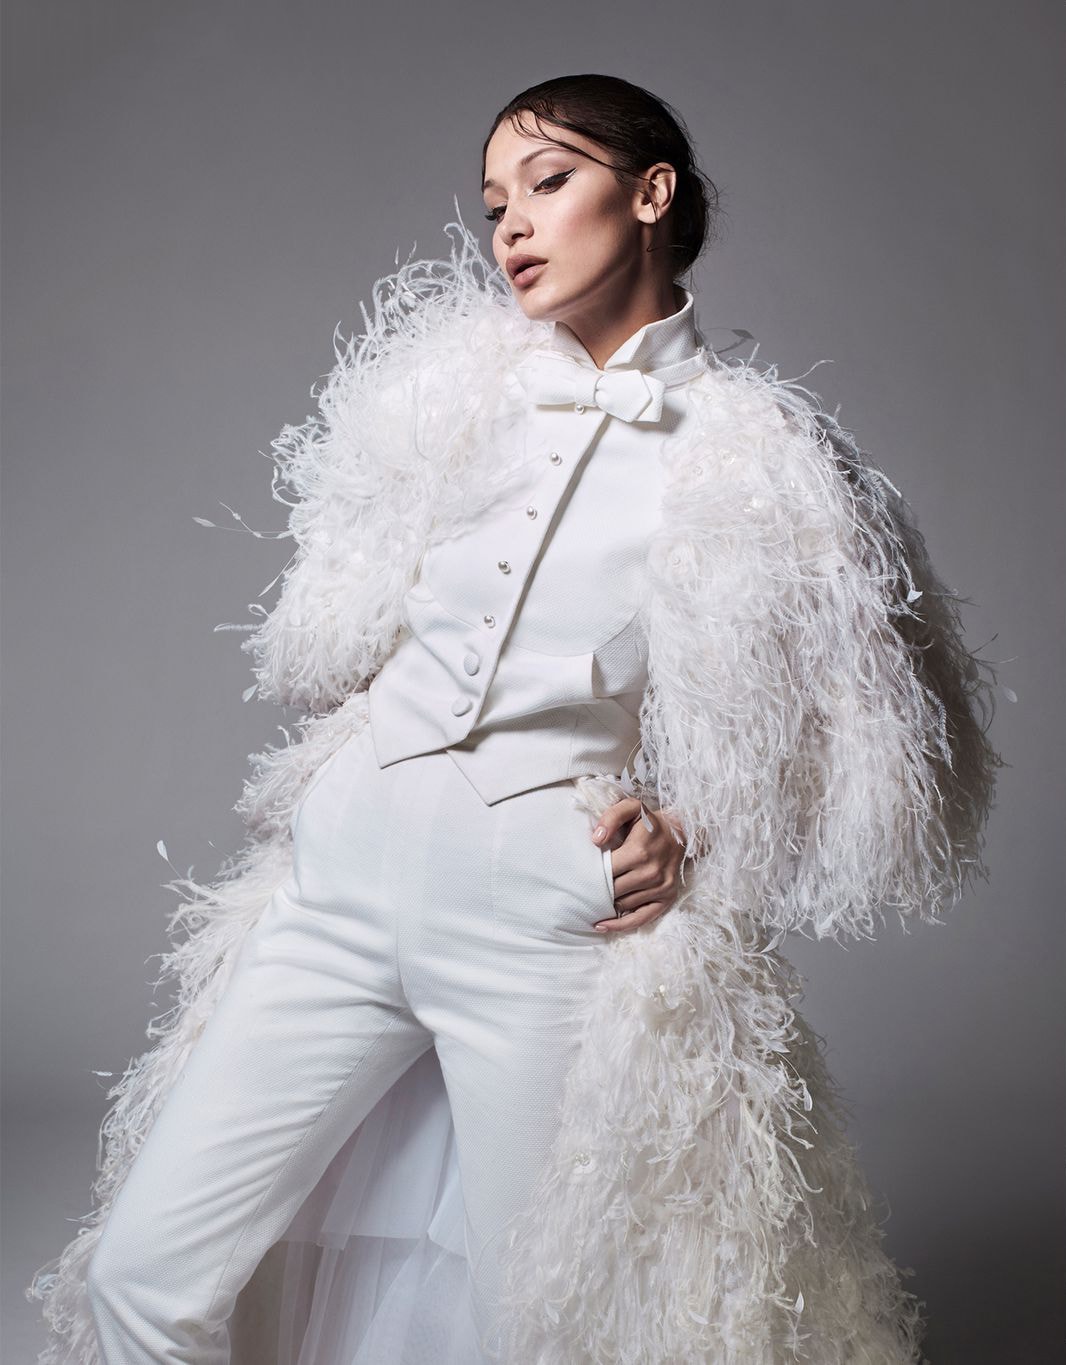 Bella Hadid Harper's Bazaar June July 2018 Chanel Haute Couture White Suit